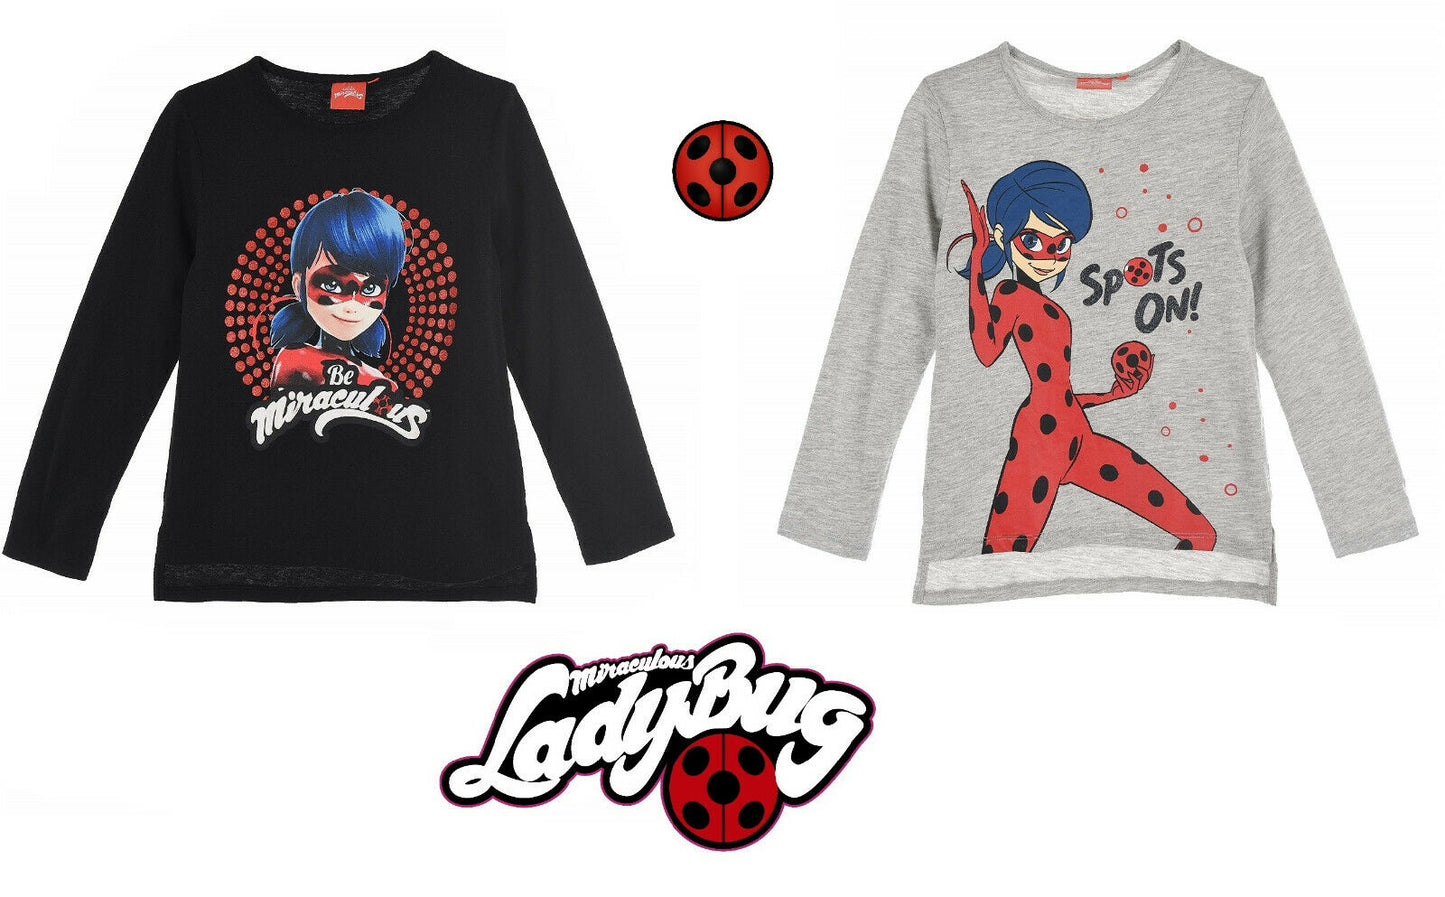 Miraculous Ladybug & Cat Noir, Long Sleeve T-Shirts, Mulitple Colours And Designs, Ages 4, 5, 6, 8, 100% Cotton, Official Merchandise